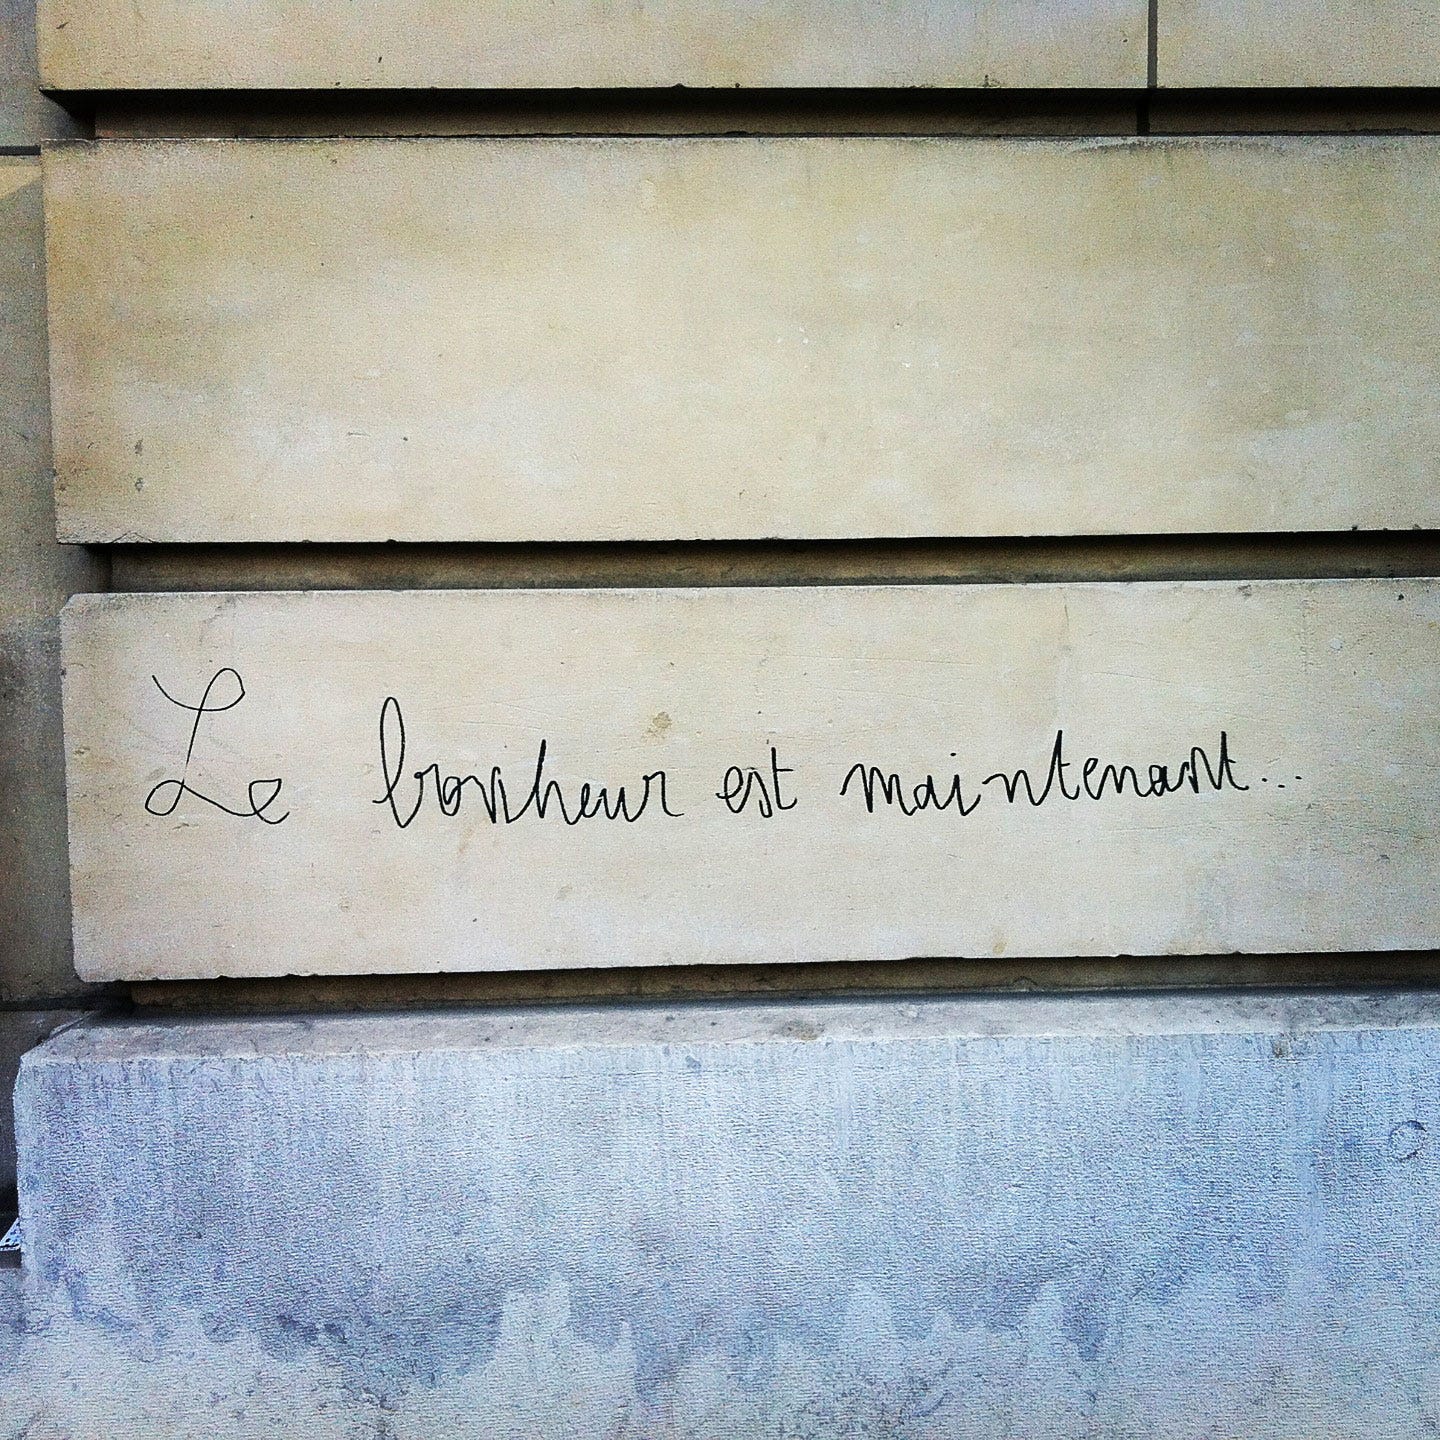 Le bonheur est maintenant, graffiti in Paris, France